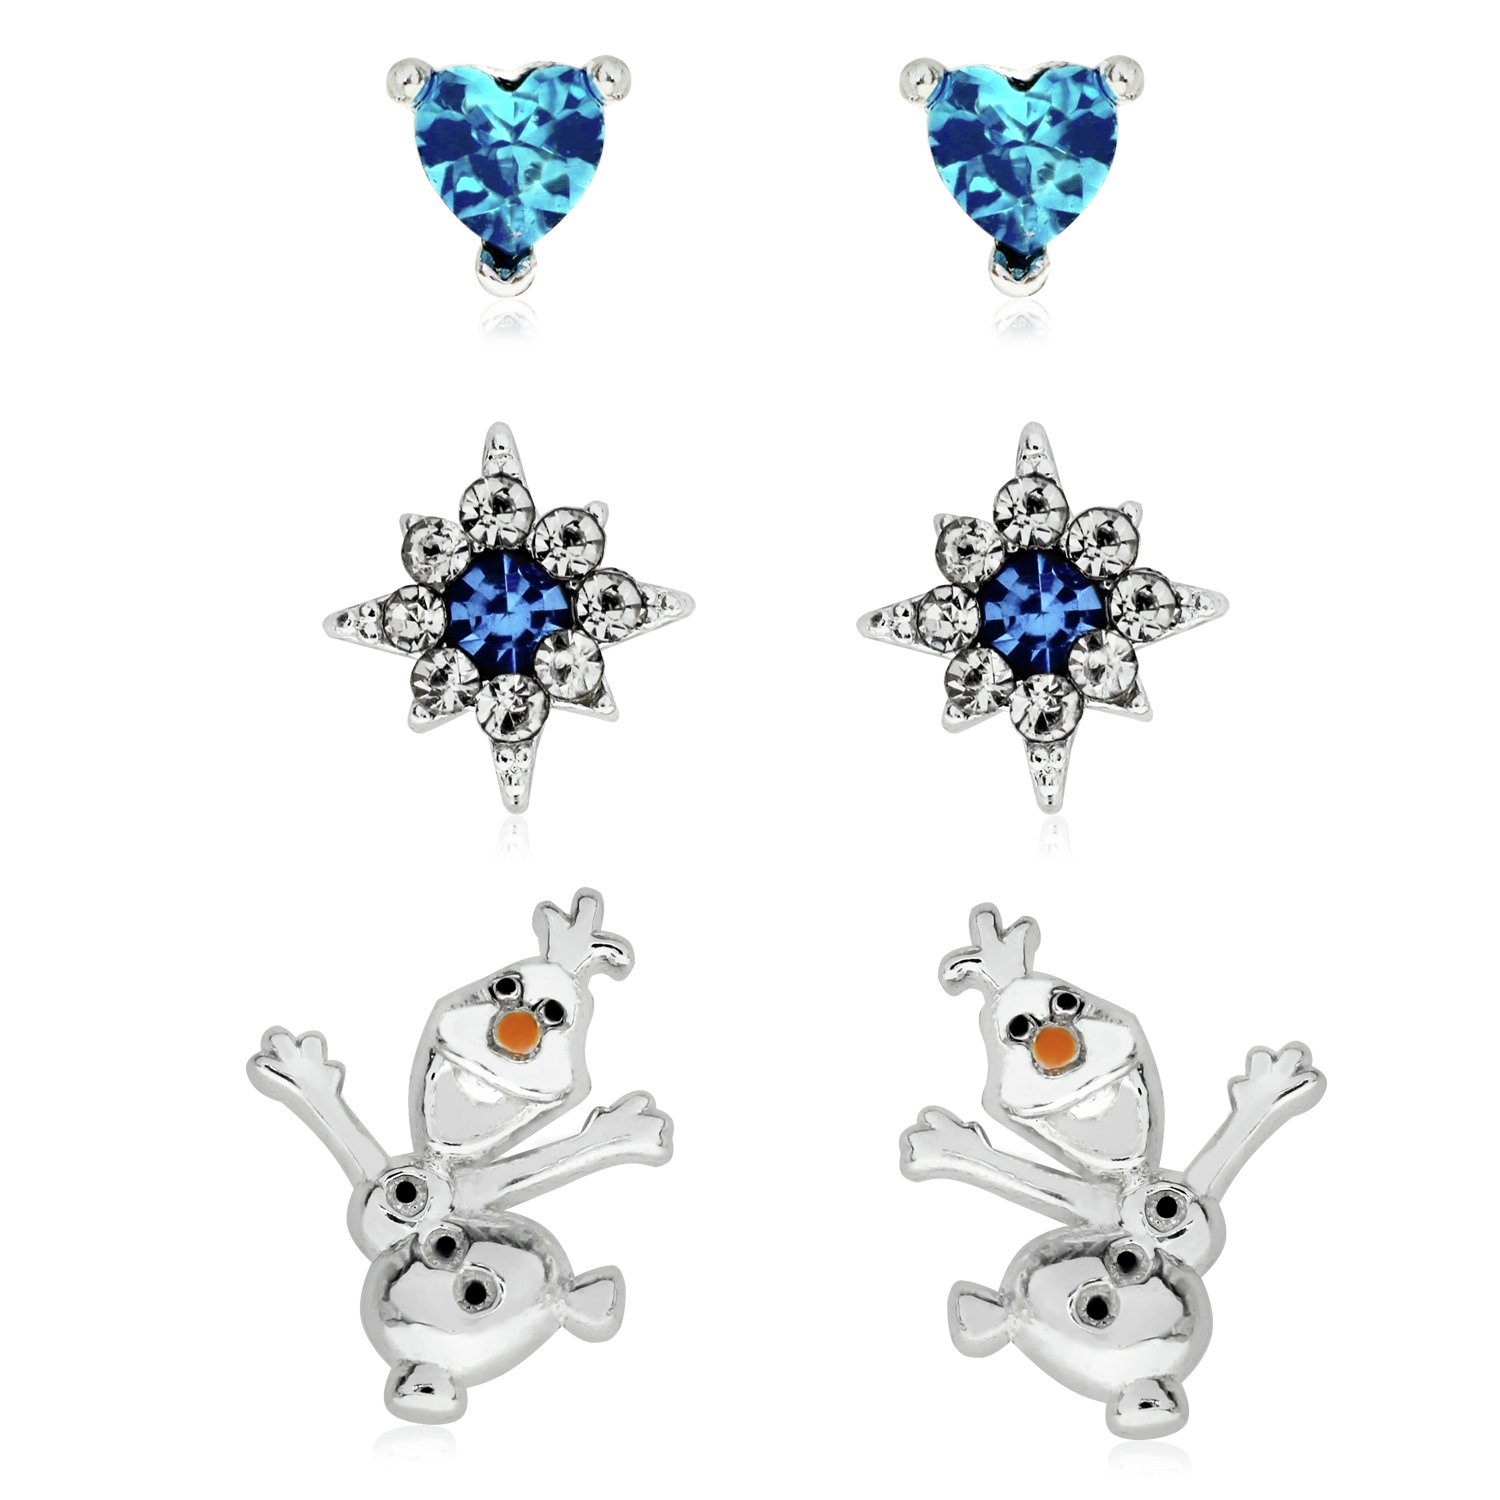 Disney Frozen Silver Coloured Olaf Stud Earrings - Set of 3